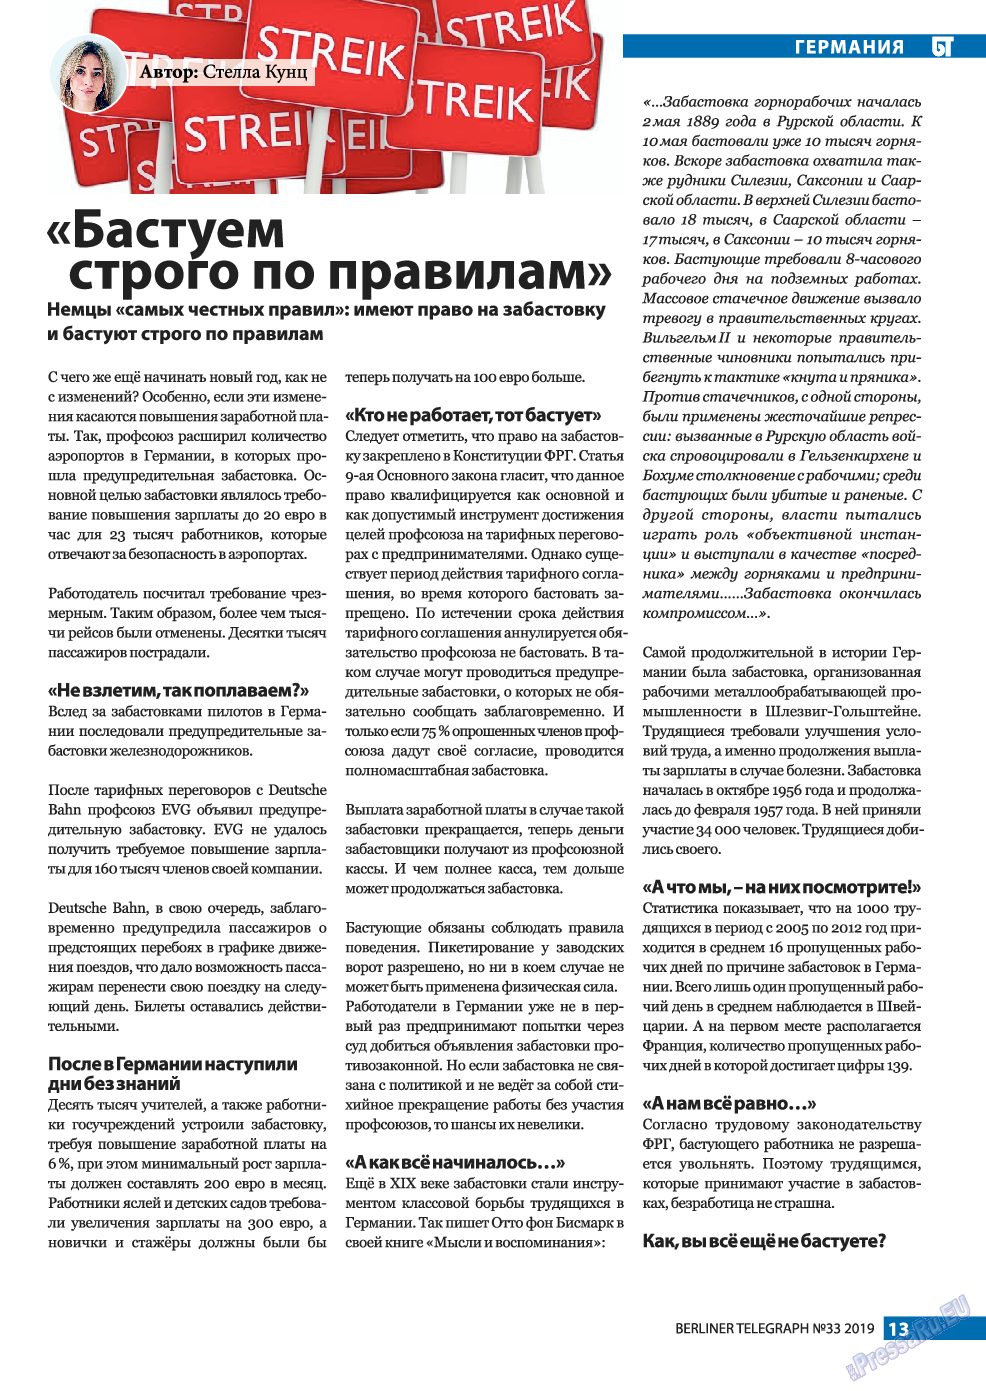 Берлинский телеграф, журнал. 2019 №33 стр.13